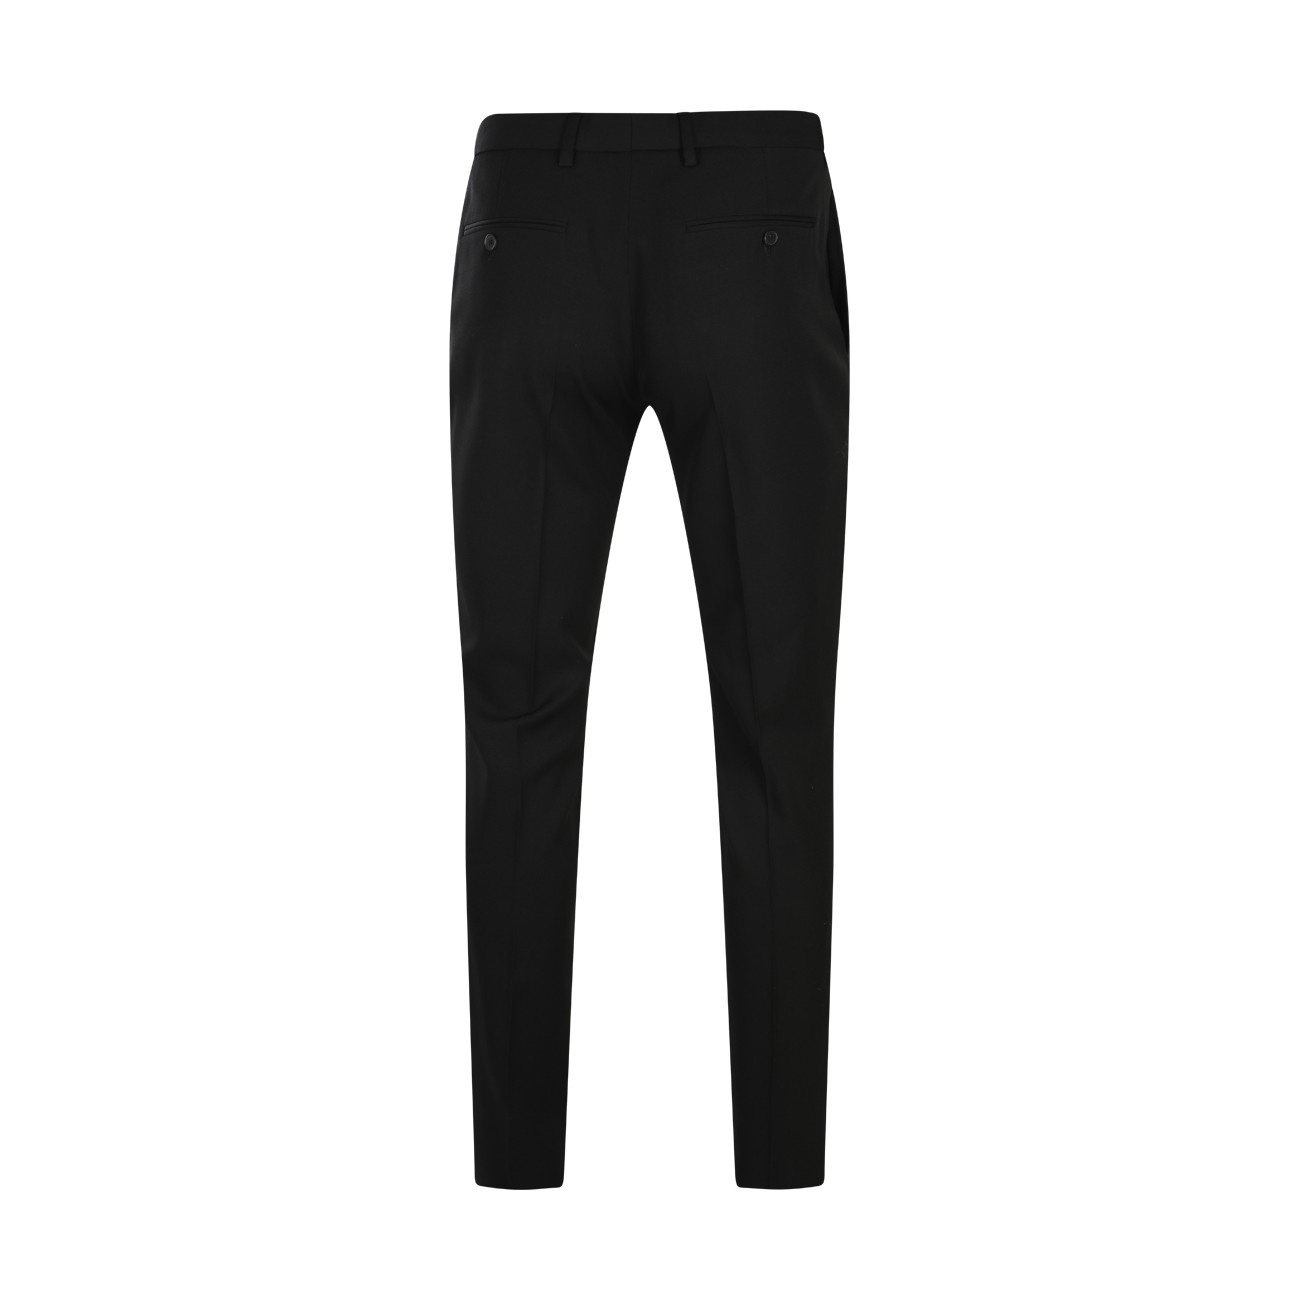 black wool pants - 2